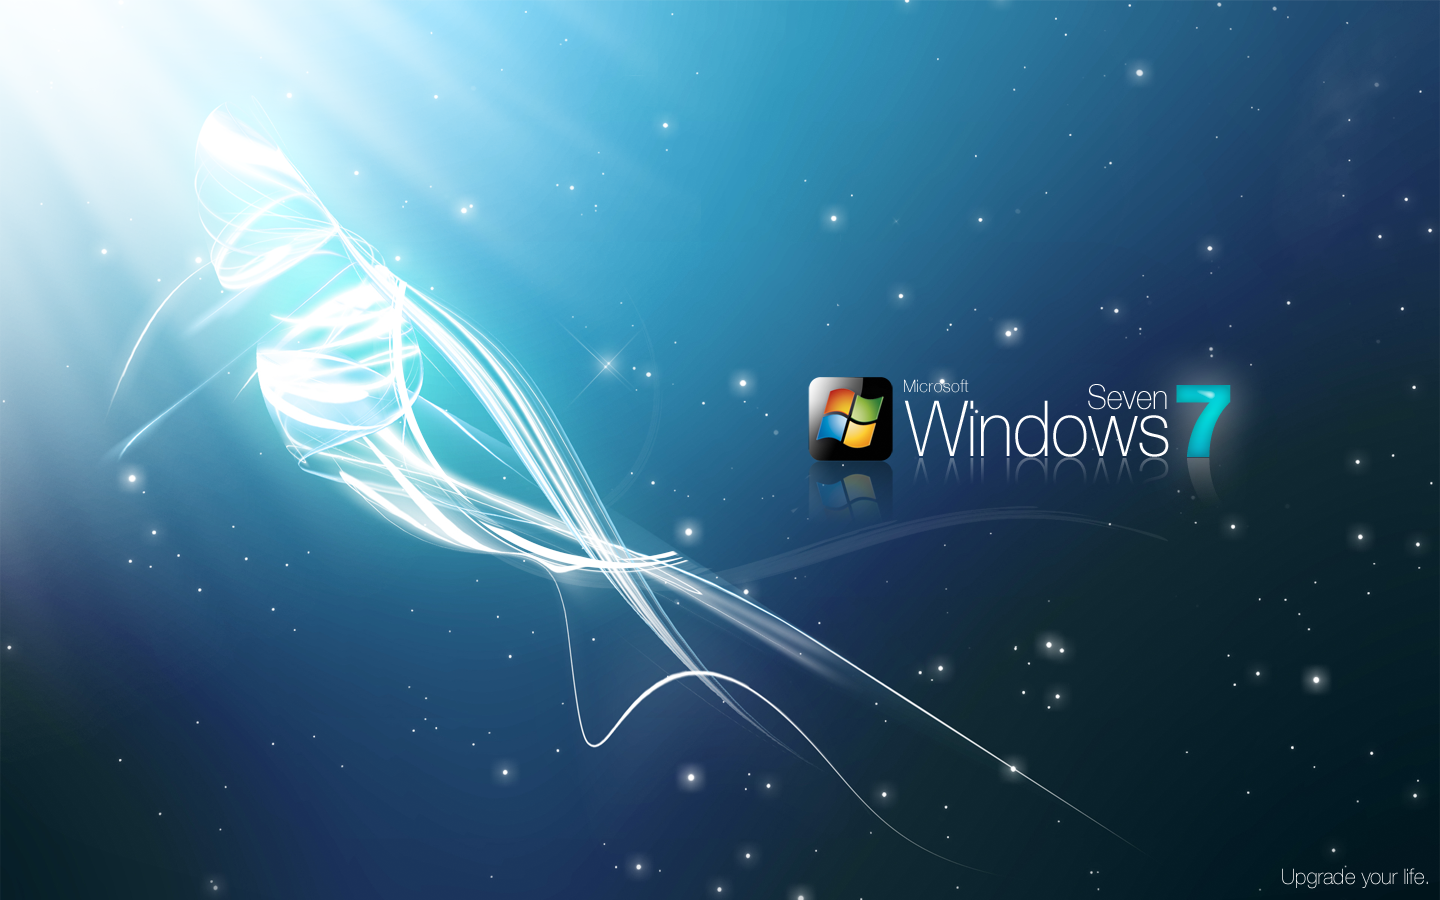 16 Windows 7 High Resolution Wallpapers - Downloads - TechMynd